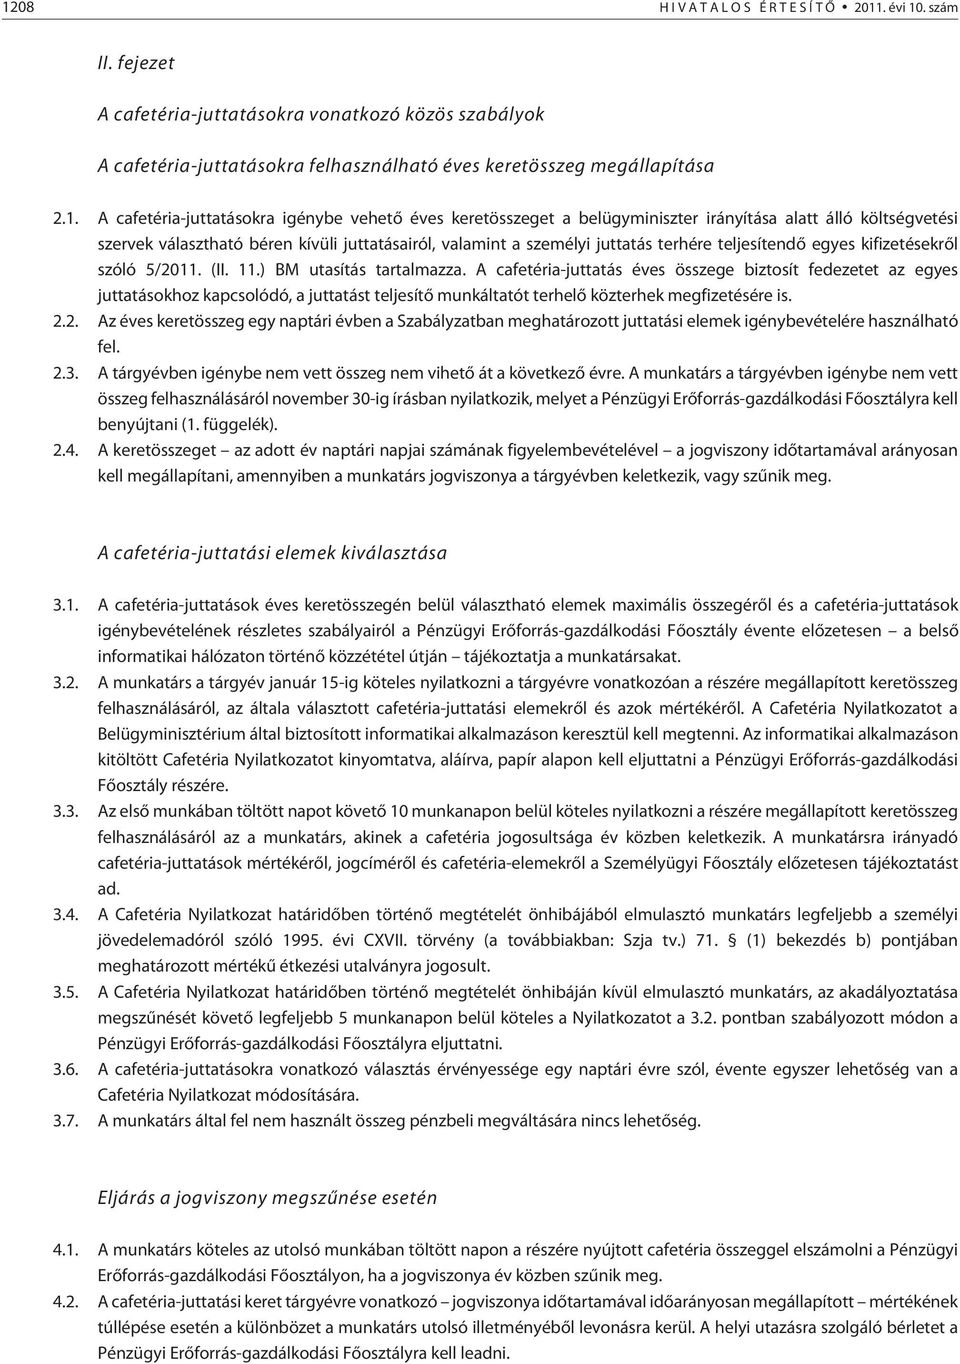 teljesítendõ egyes kifizetésekrõl szóló 5/2011. (II. 11.) BM utasítás tartalmazza.